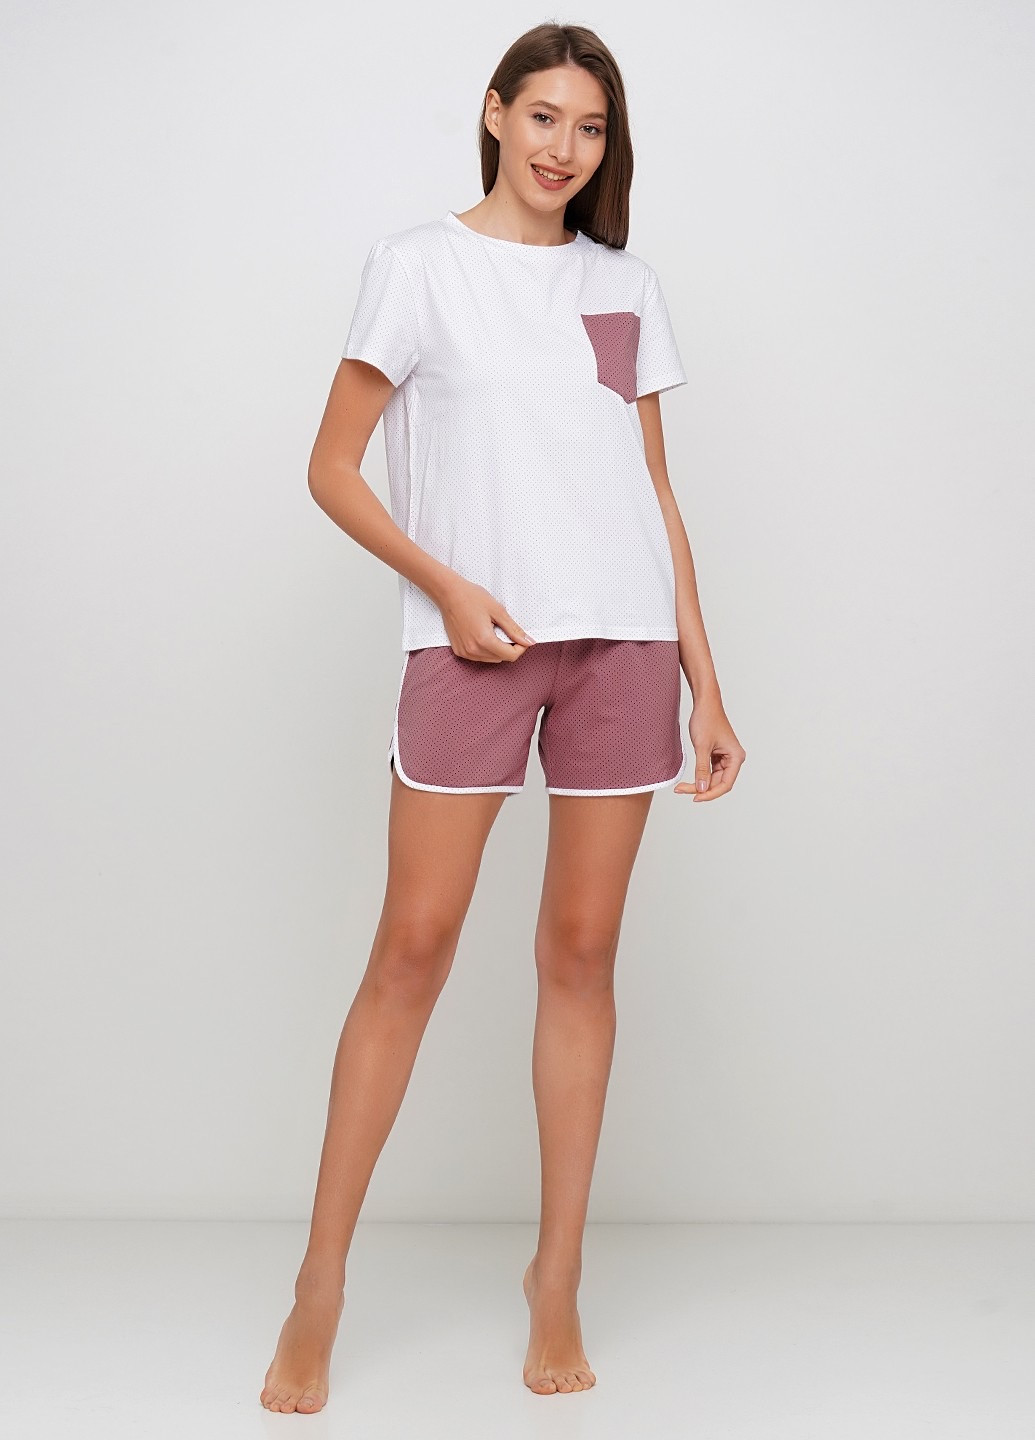 Коричневая пижама хлопковая в горошек xl футболка + шорты JULIA